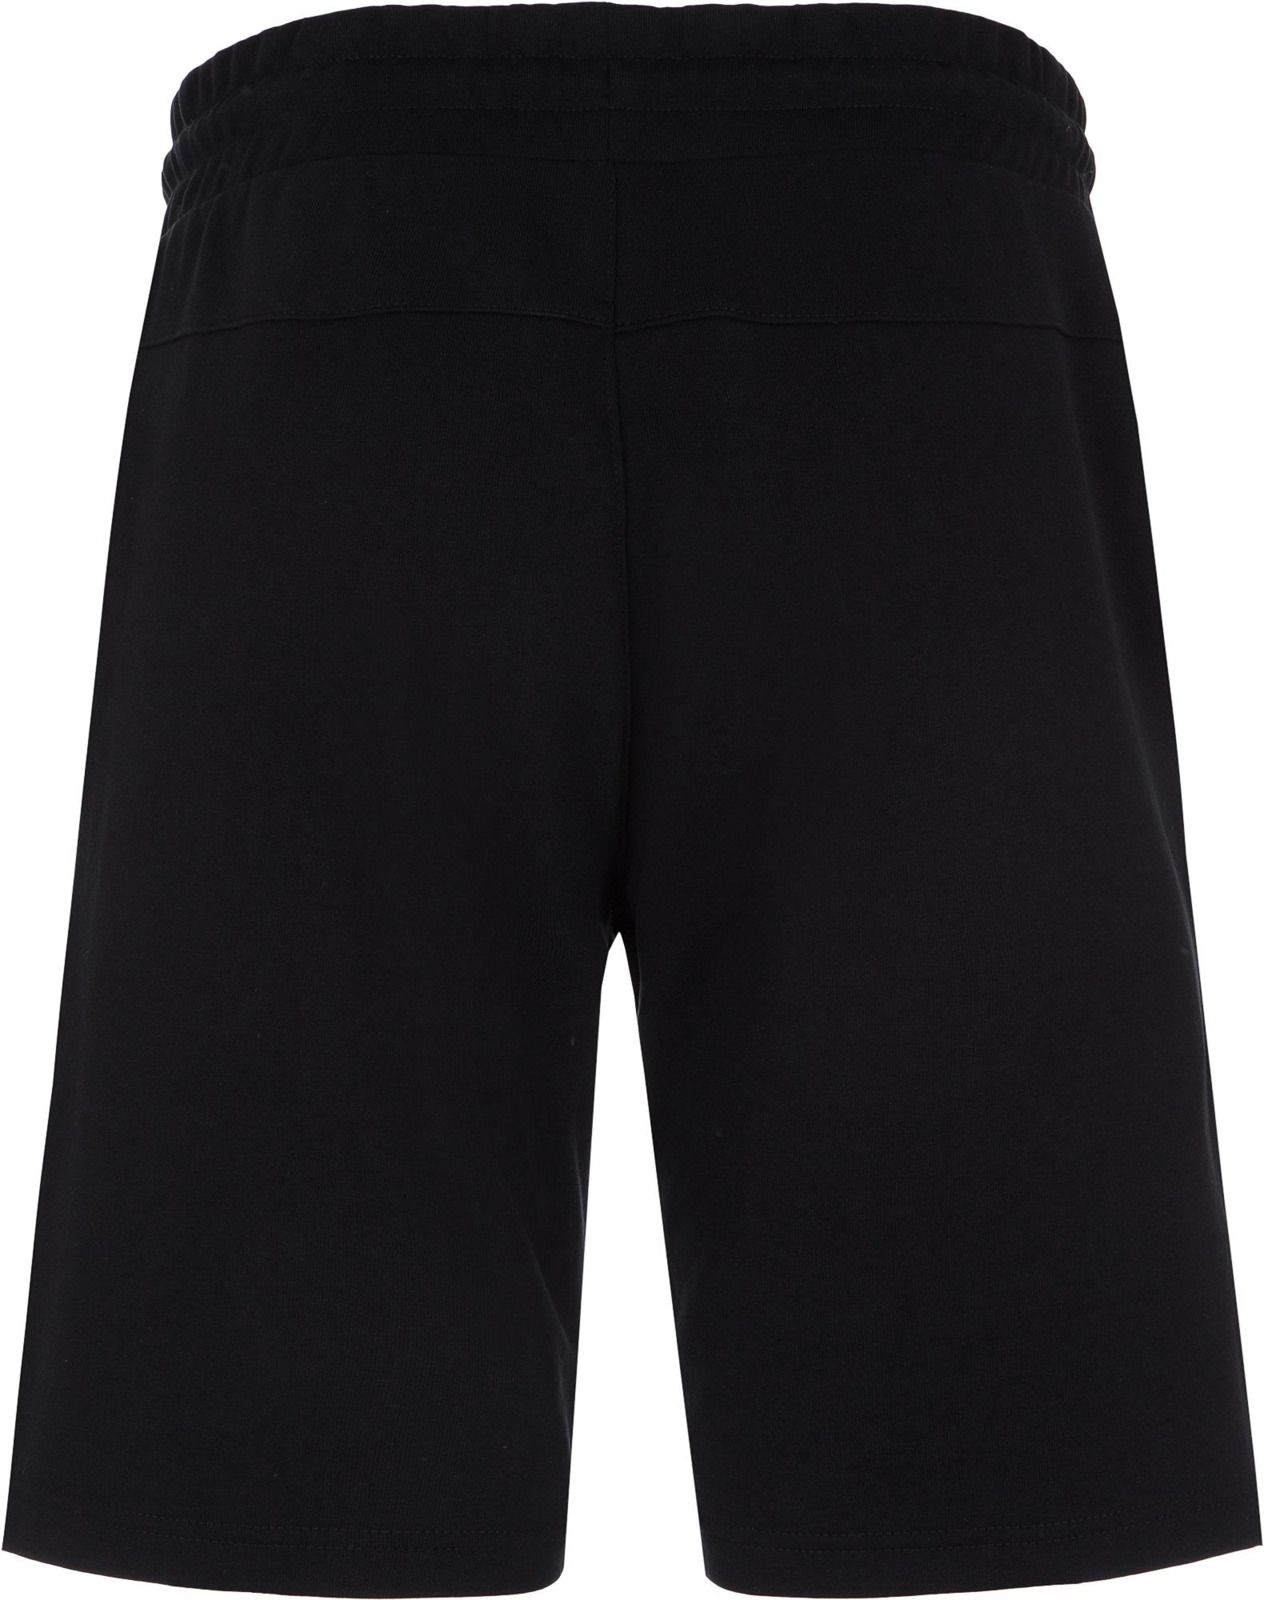   Kappa Men's Shorts, : . 304IDQ0-99.  L (50)